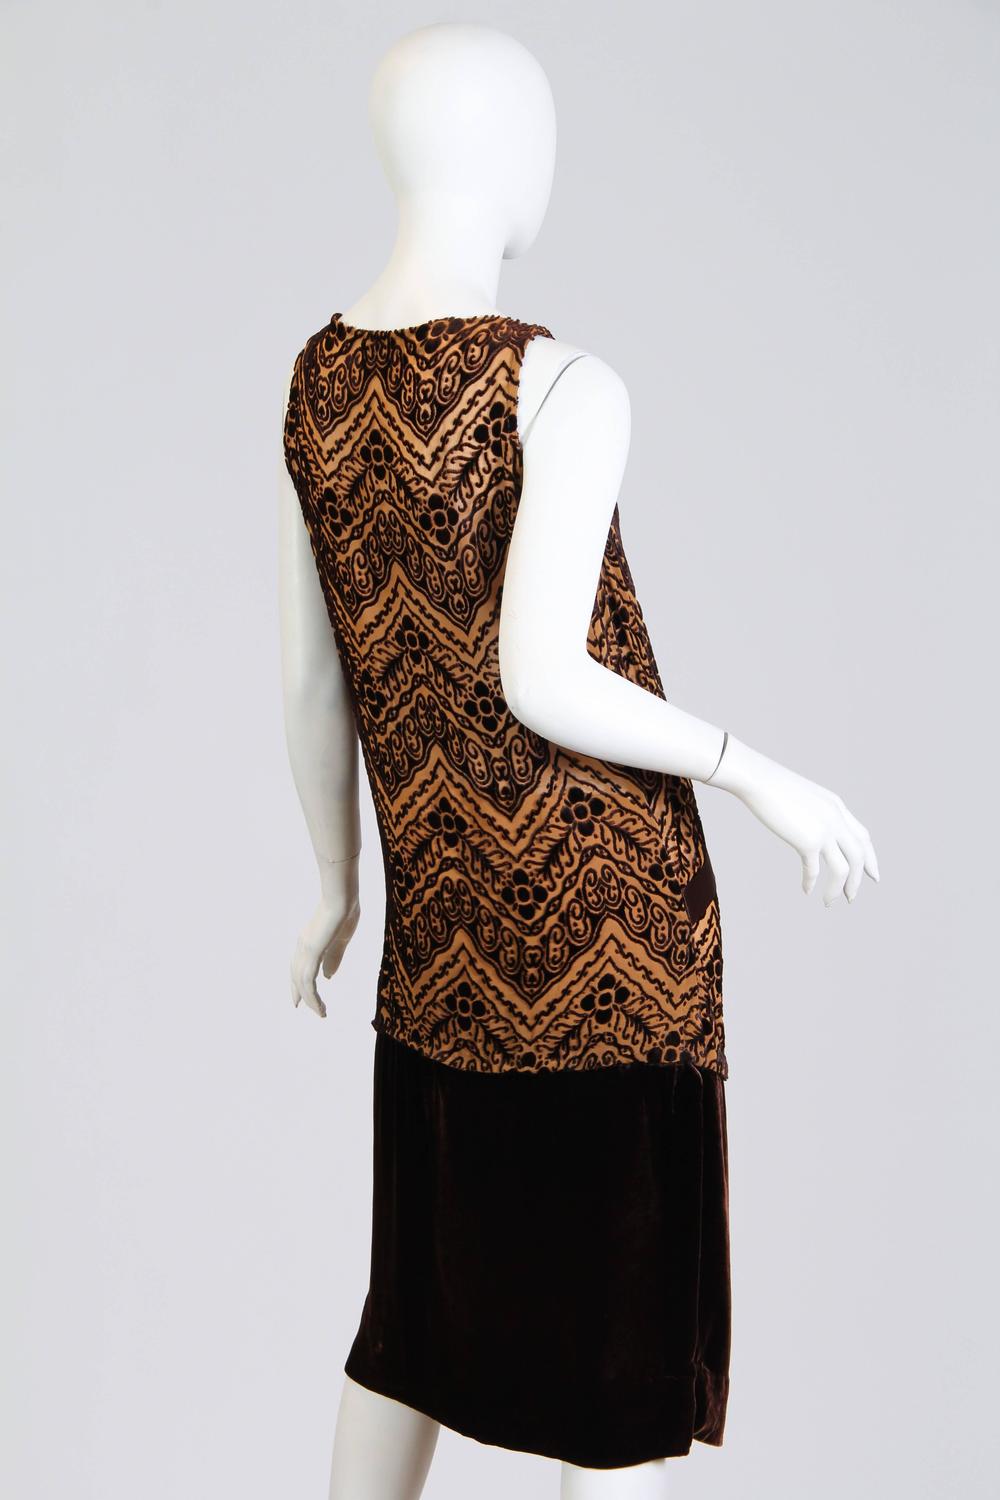 1920s Silk Devoré Velvet Dress For Sale at 1stdibs